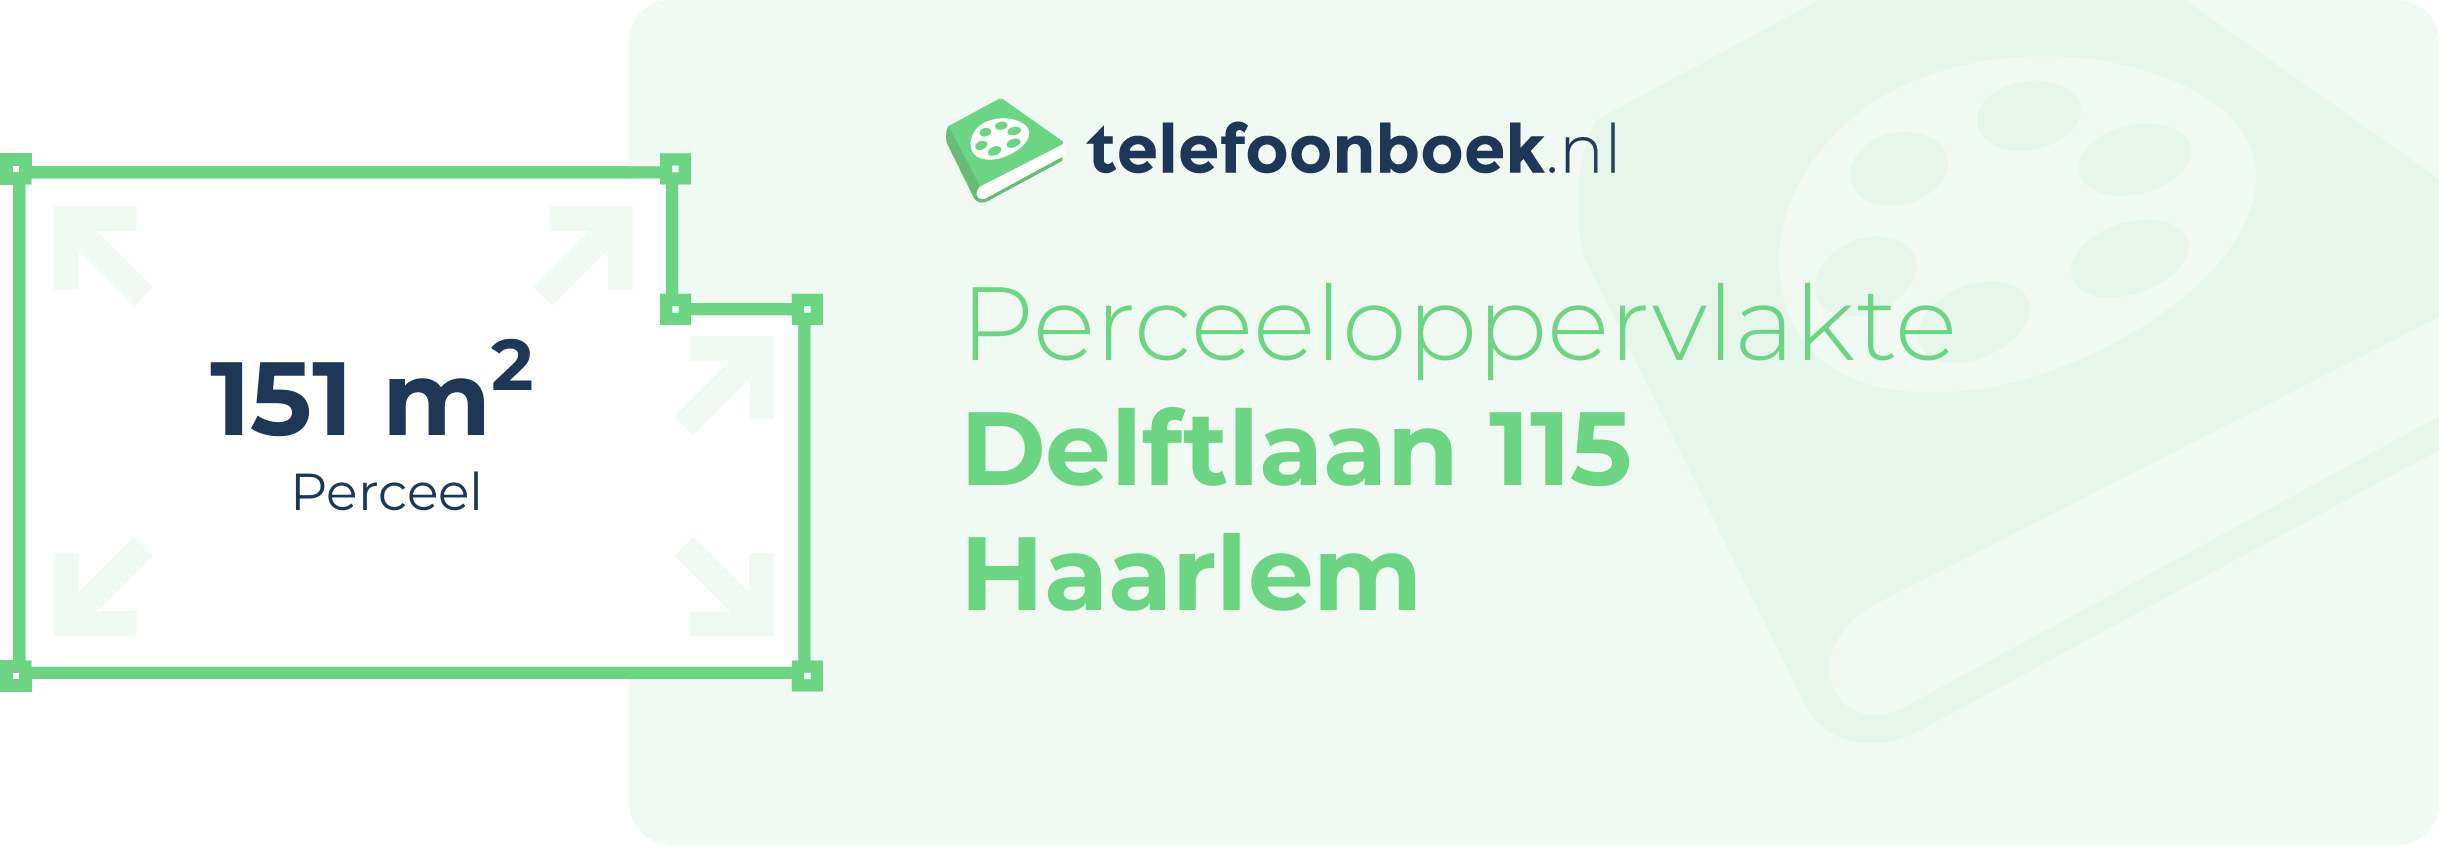 Perceeloppervlakte Delftlaan 115 Haarlem